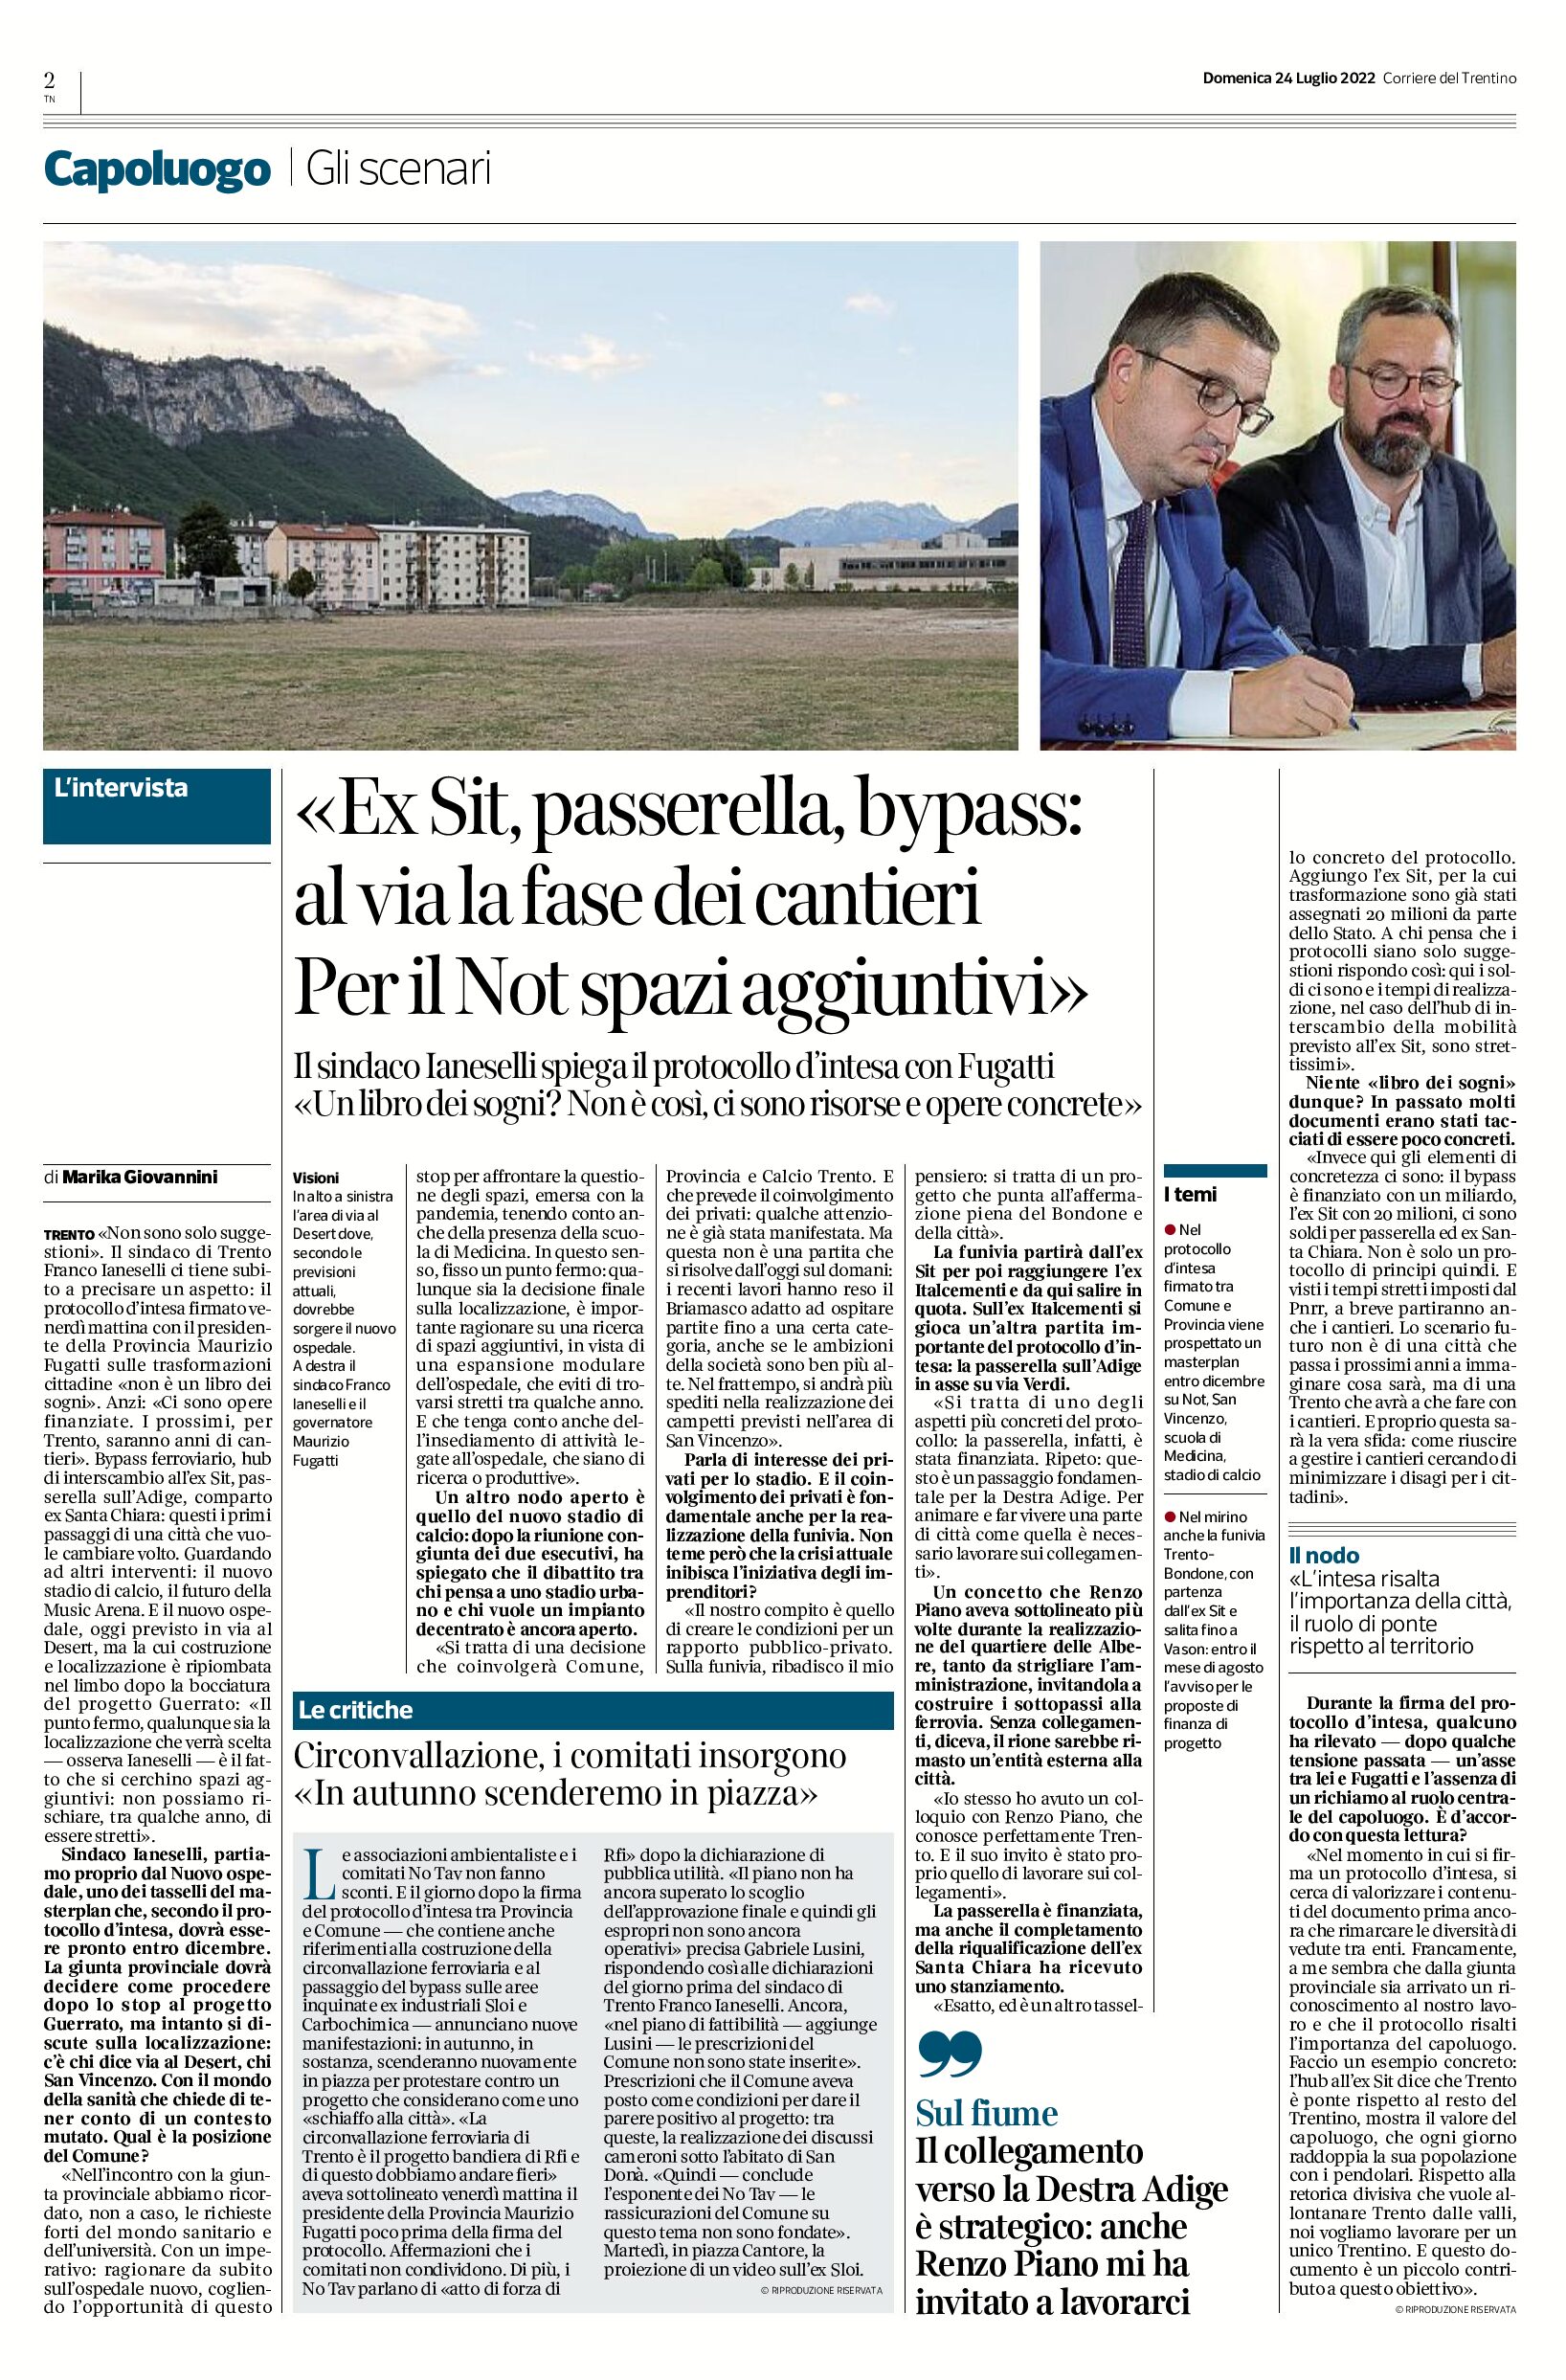 Trento: ex Sit, passerella, bypass, Not. Intervista al sindaco Ianeselli